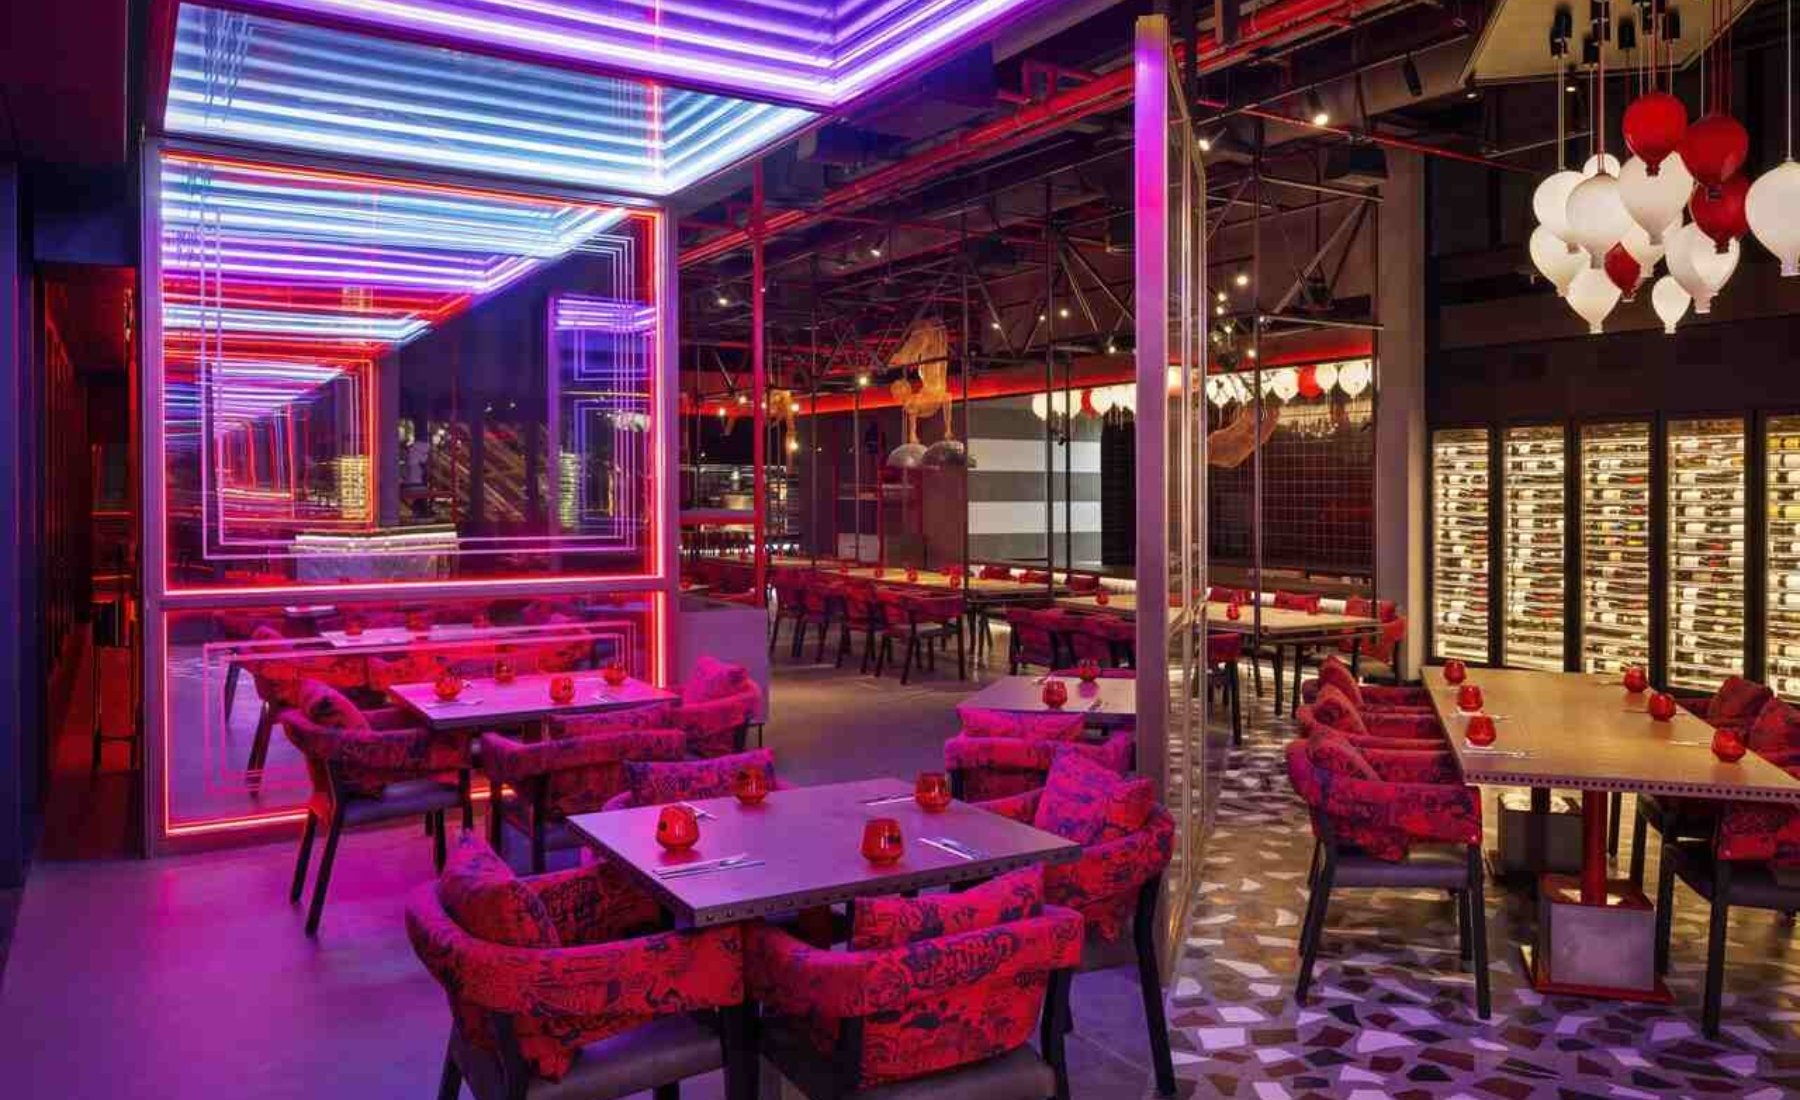 StreetXO Dubai, Dabiz Muñoz, restaurantes lujo, lujo